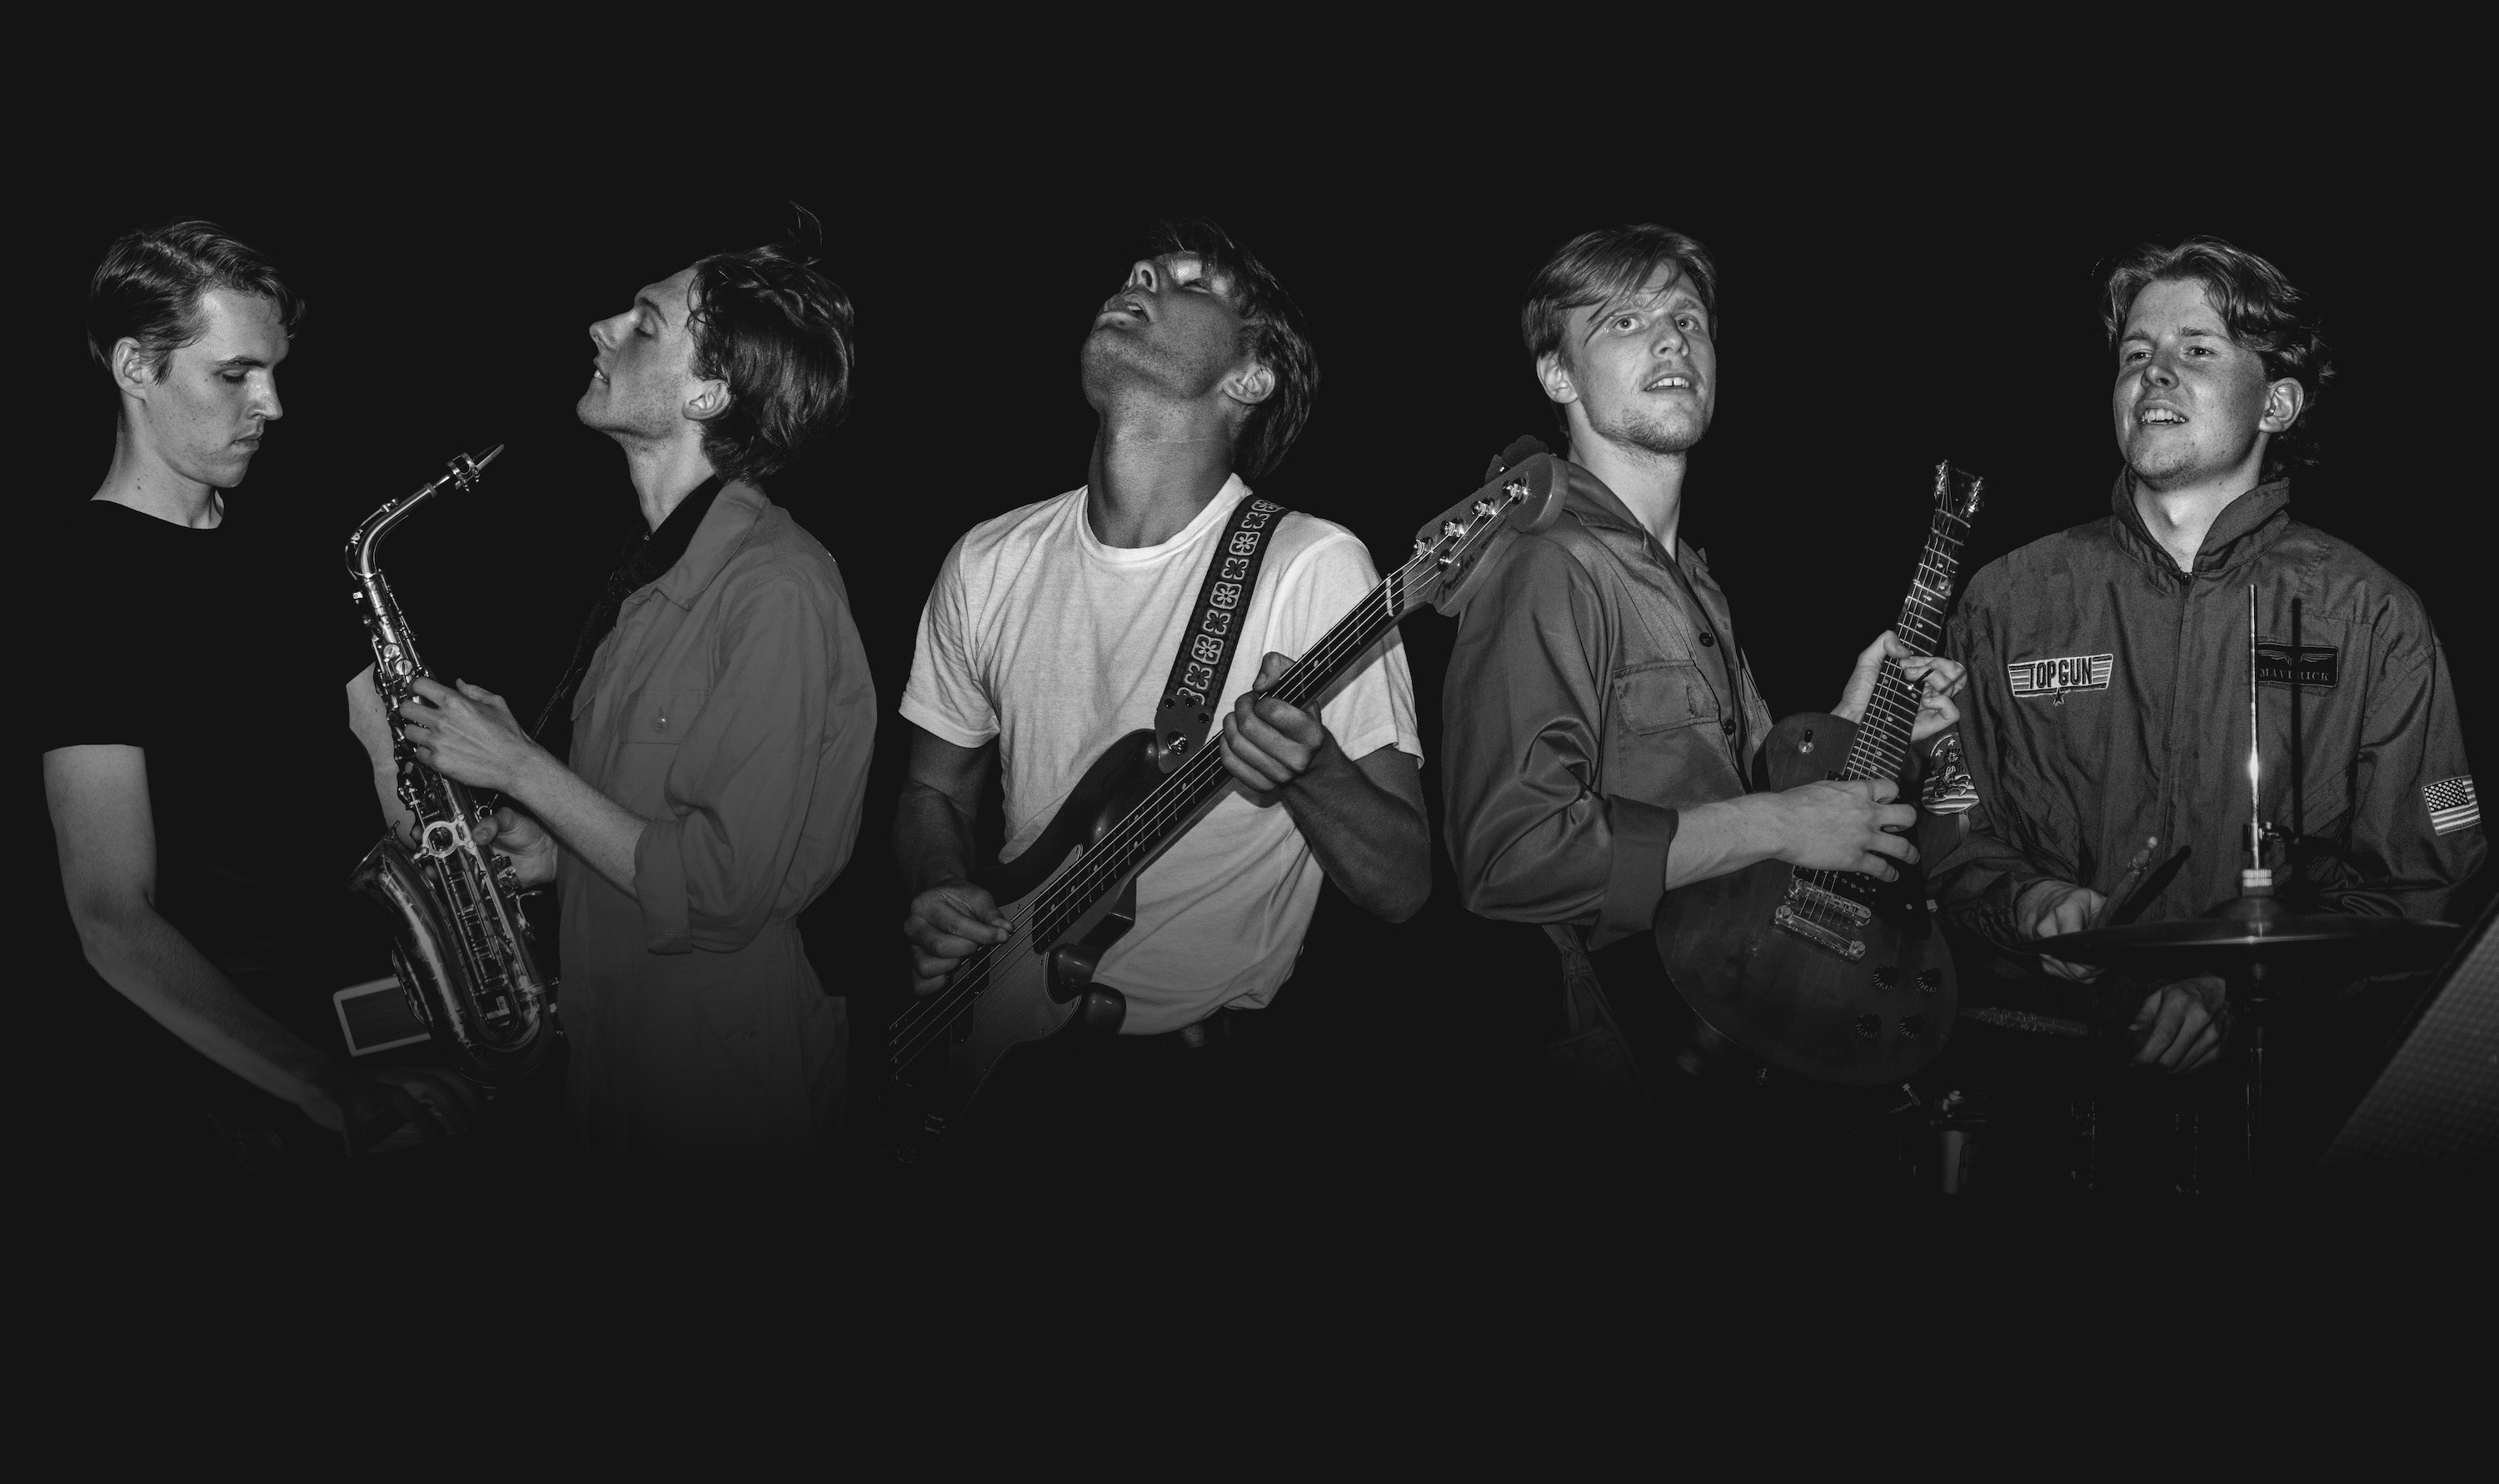 Pressbild i svartvitt på de fem killarna i Sanna band.